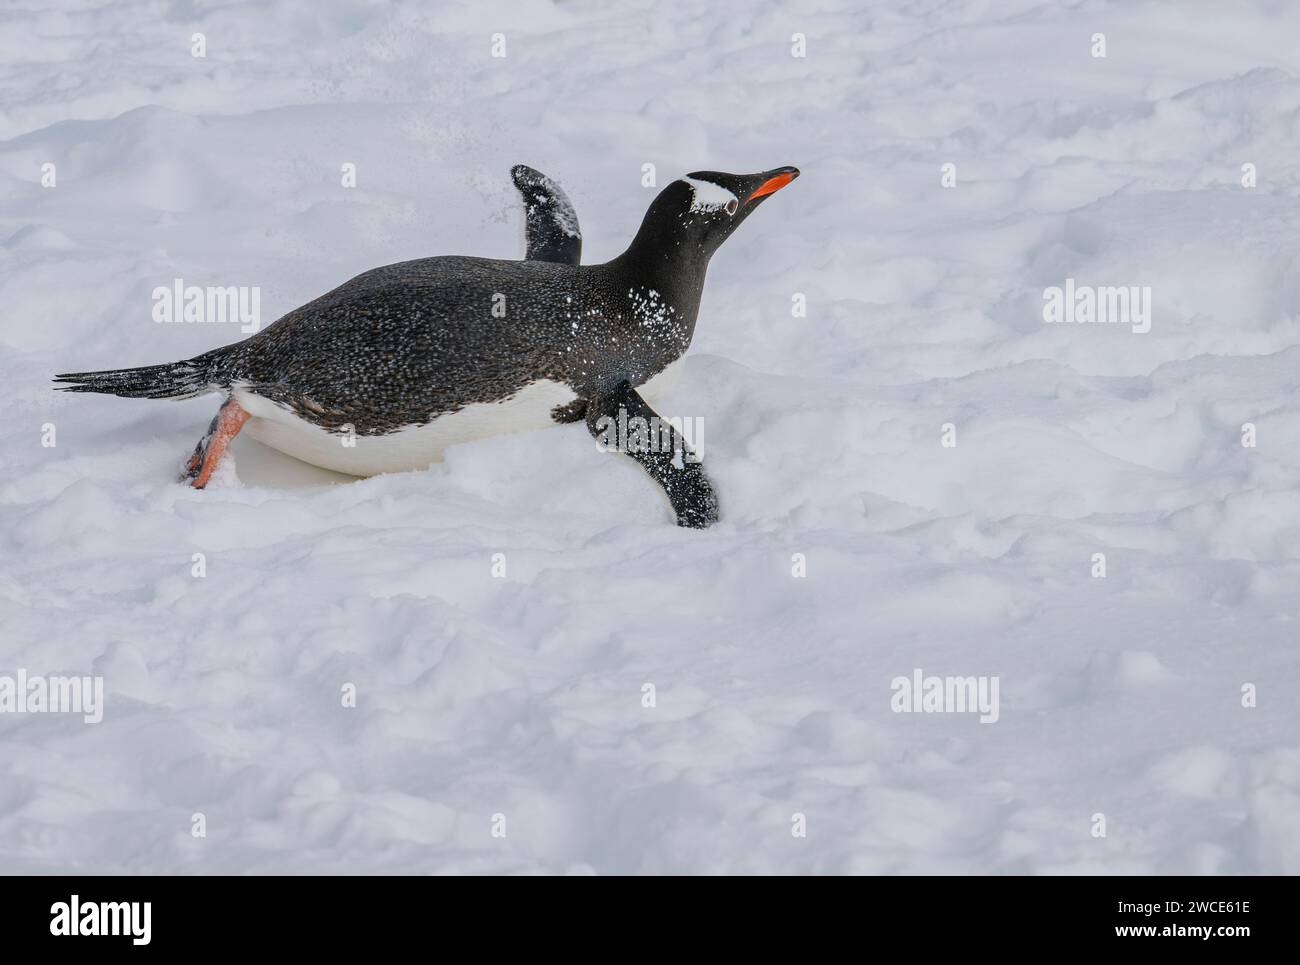 Pinguini di Gentoo che arrivano ai campi di riproduzione, al porto di Neko, in Antartide, camminando nella neve e nel ghiaccio per trovare il luogo di nidificazione, sulla riva dopo aver lasciato l'acqua Foto Stock